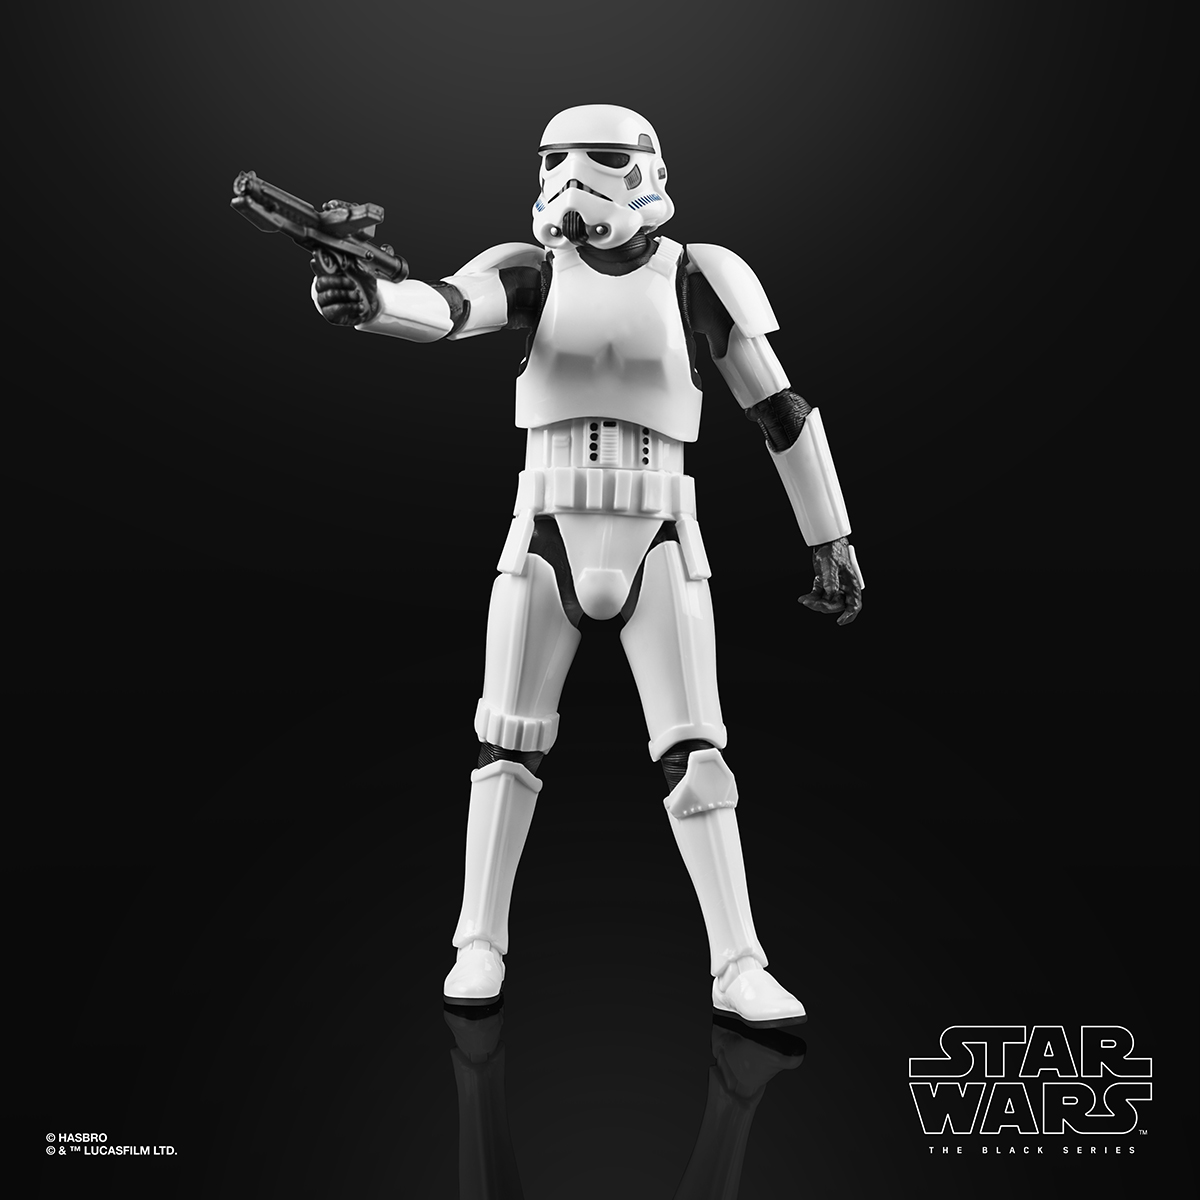 Star Wars The Black Series 6 Inch Imperial Stormtrooper Figure Oop 3